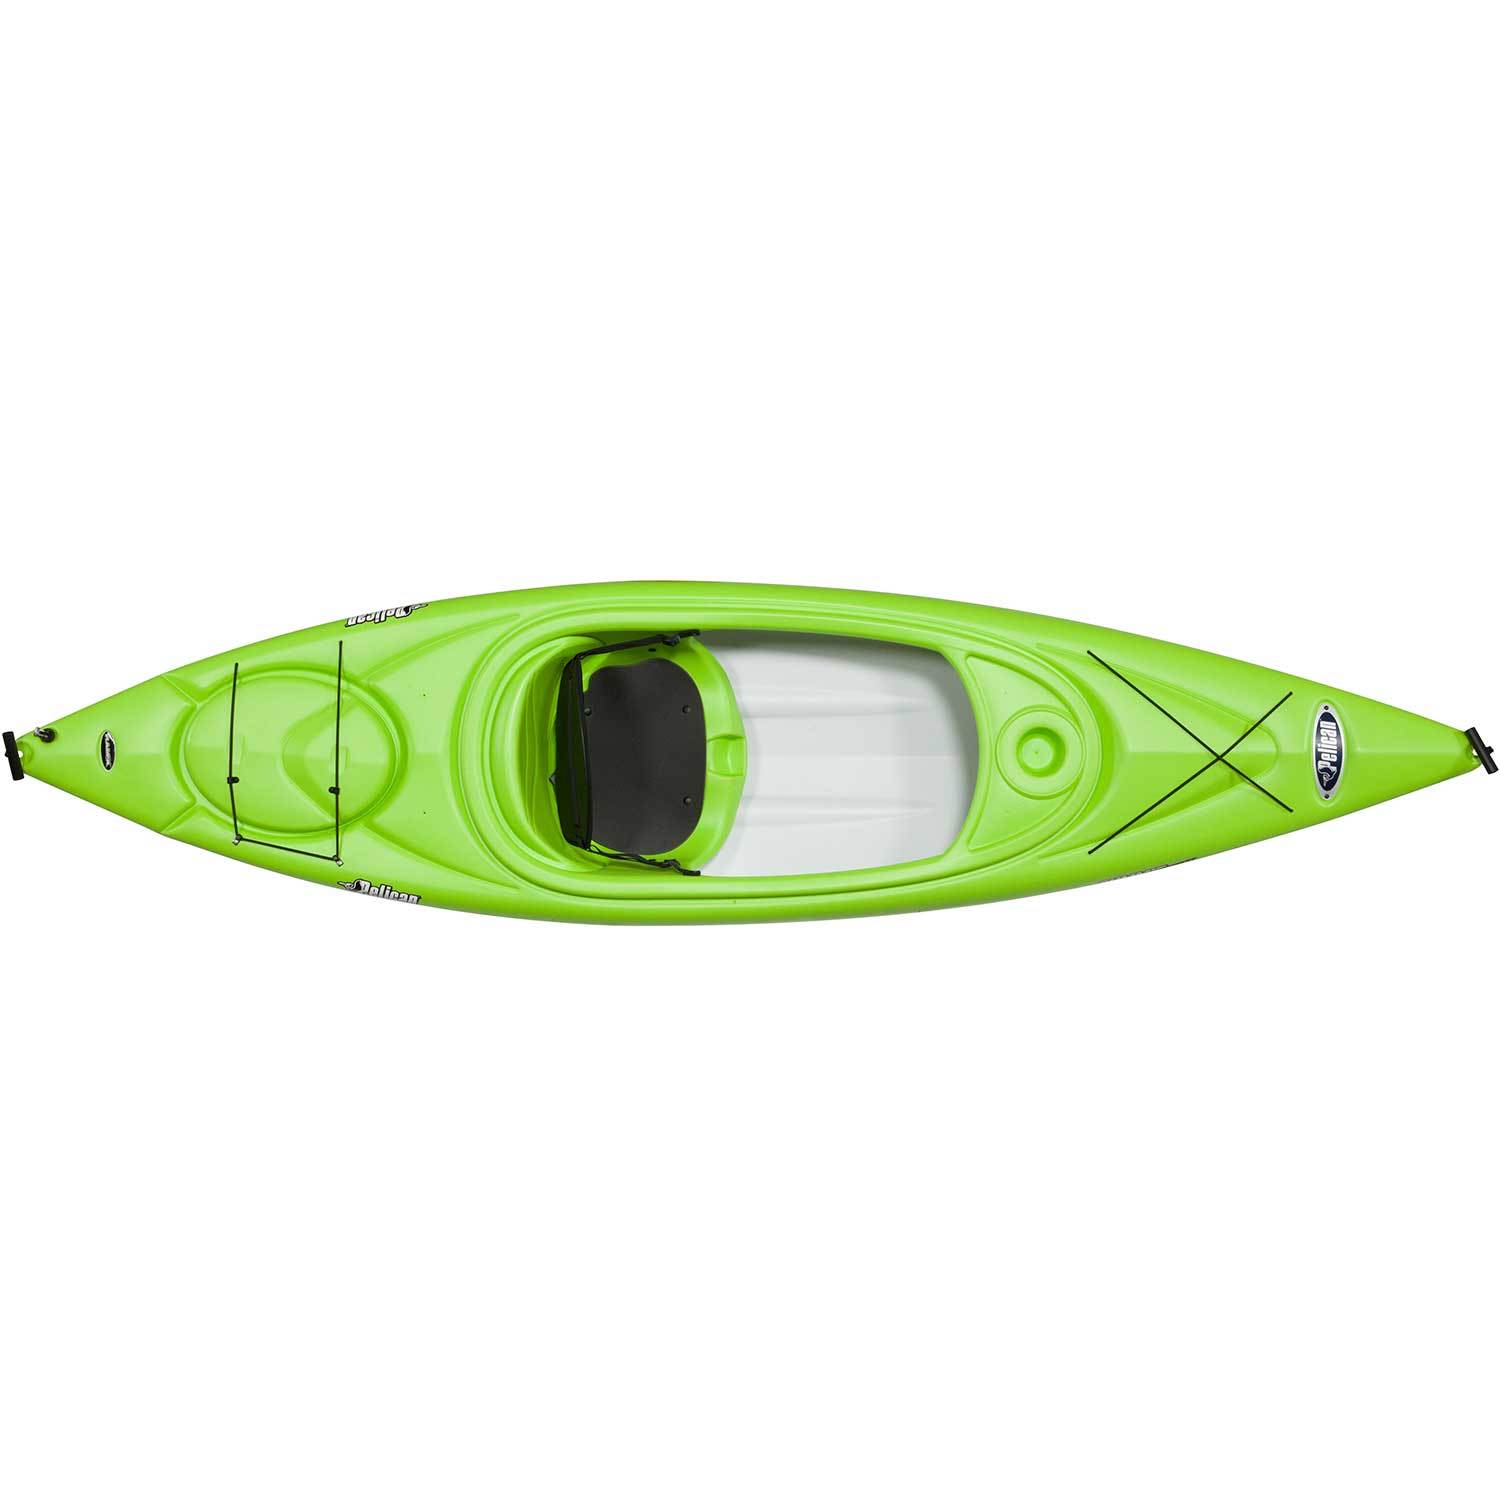 Summit 100X Sit-Inside Kayak, Lime Green/White